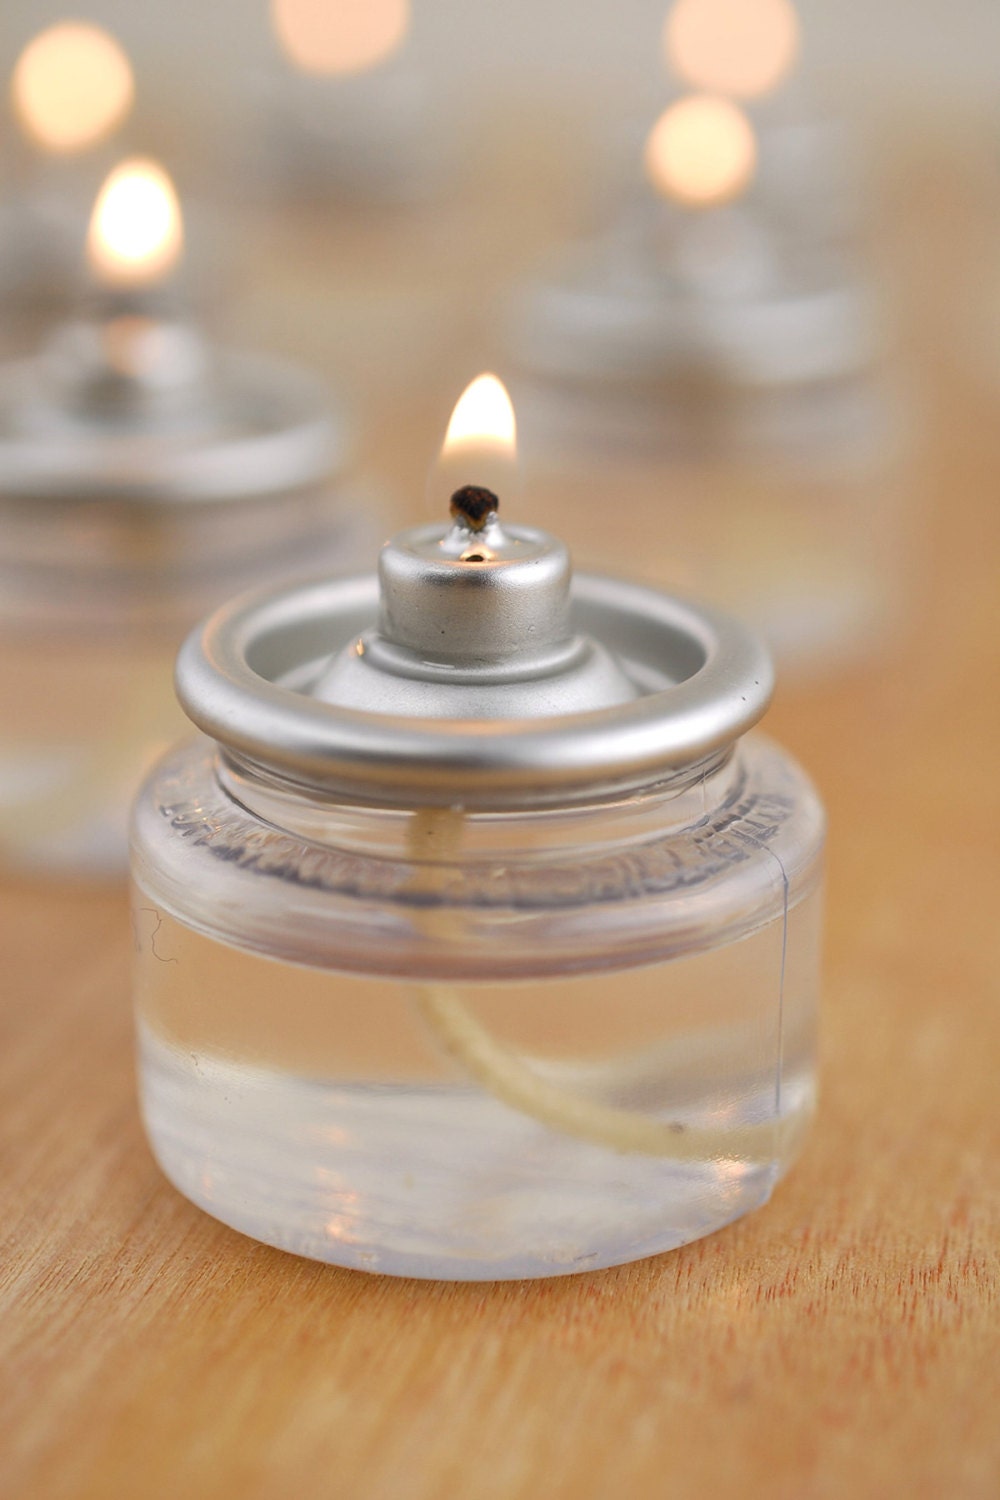 24 bougies chauffe-plat transparentes flottantes - non parfumées